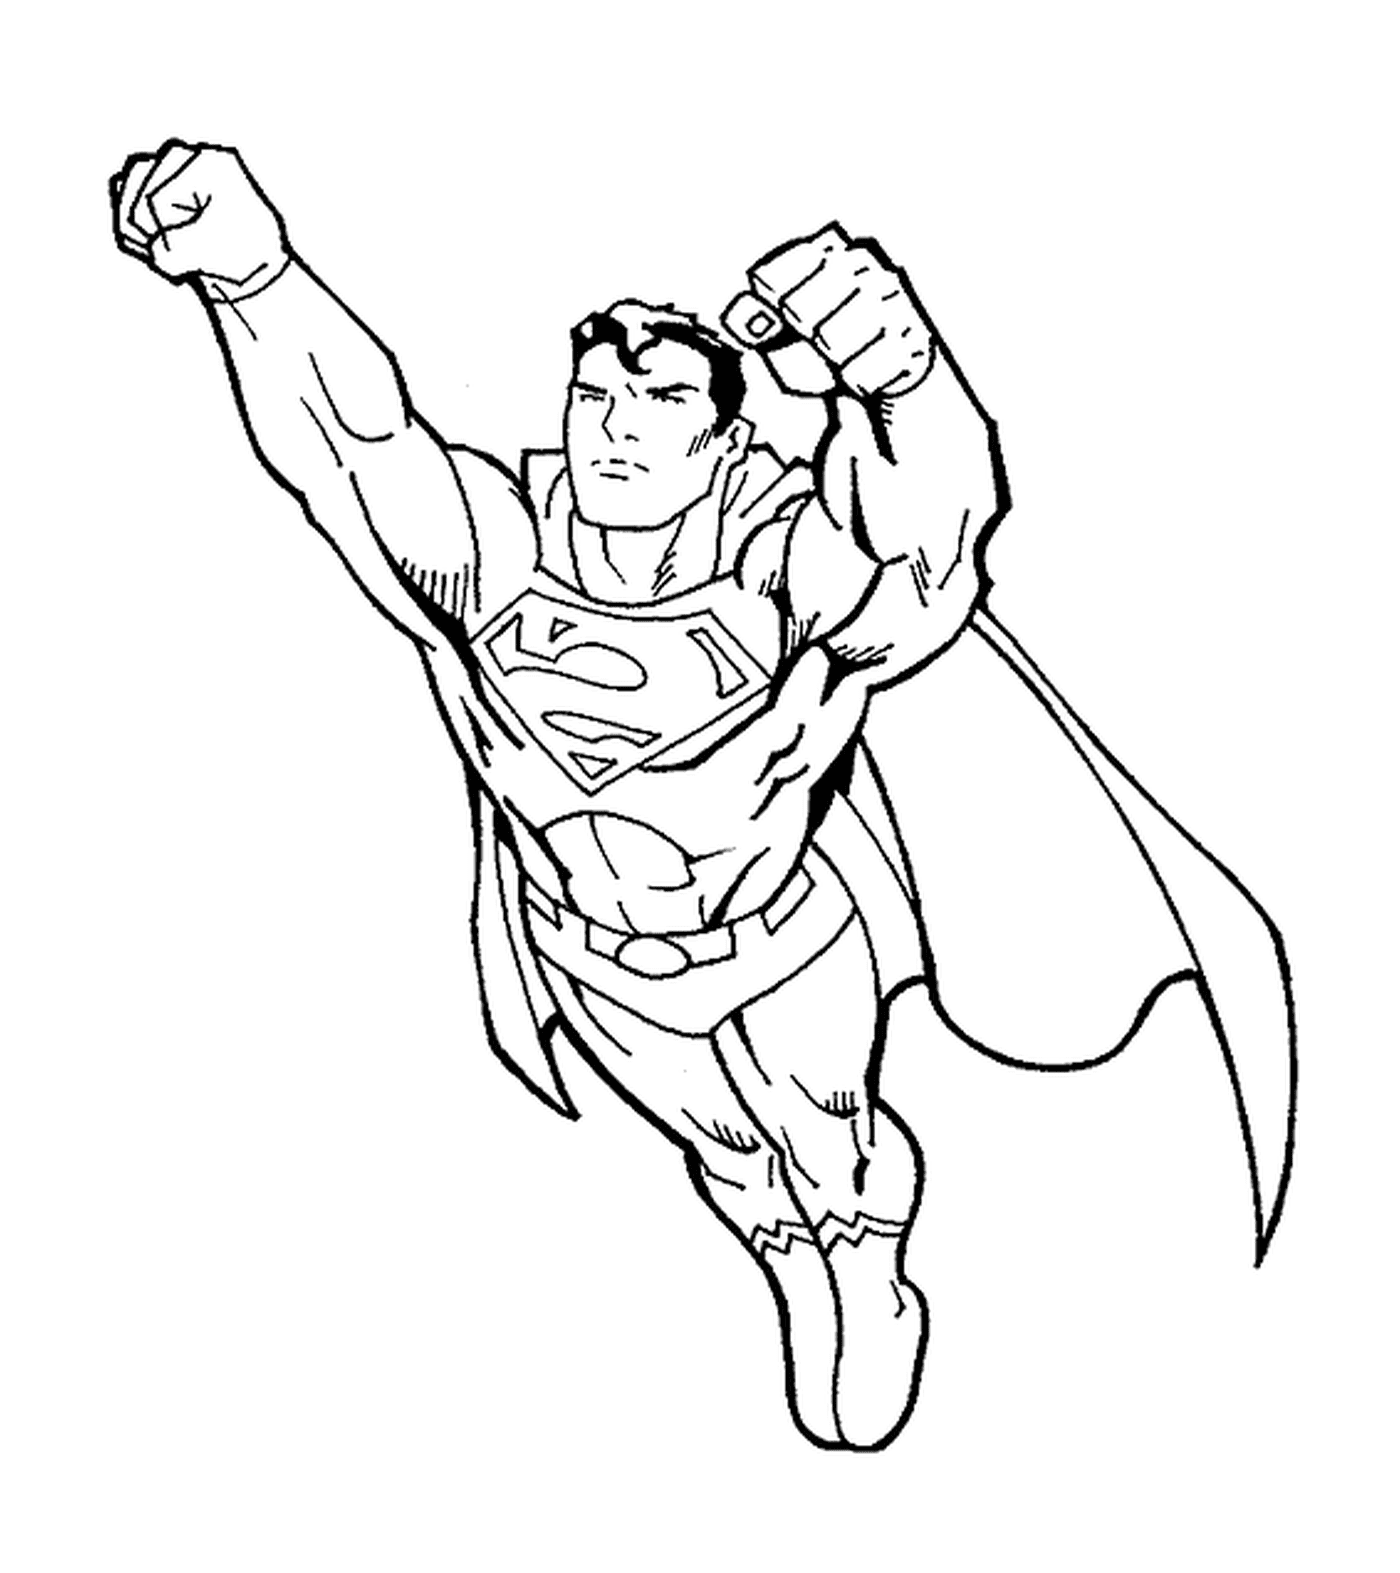  सुपरमैन, मुट्ठी आगे 